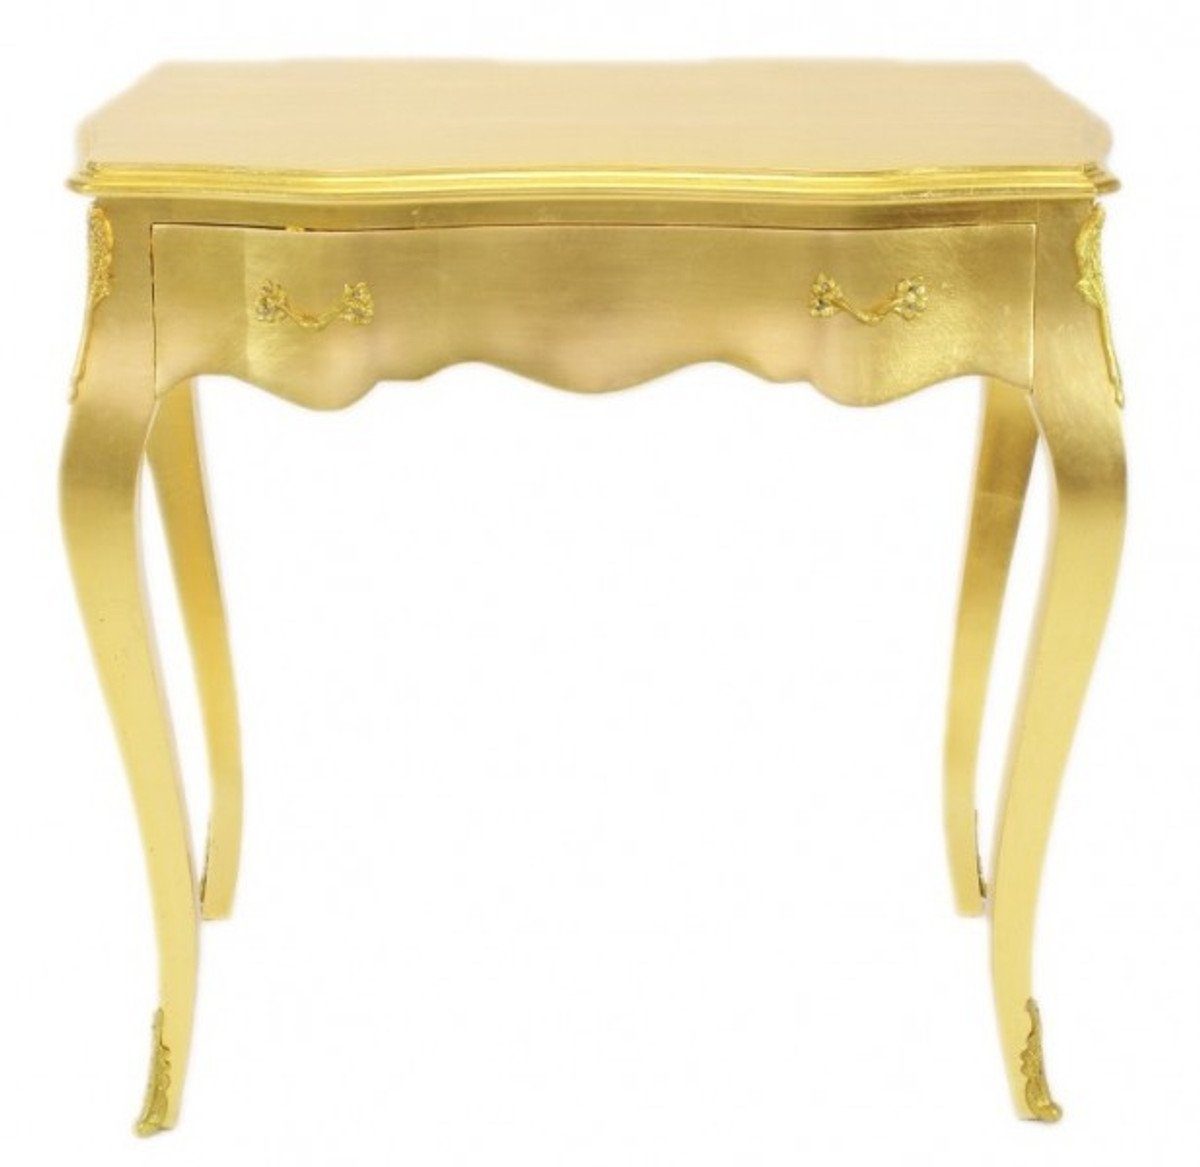 Casa Padrino Beistelltisch Barock Konsolen Tisch Gold mit Schublade 80 x 40 cm - Möbel Antik Stil